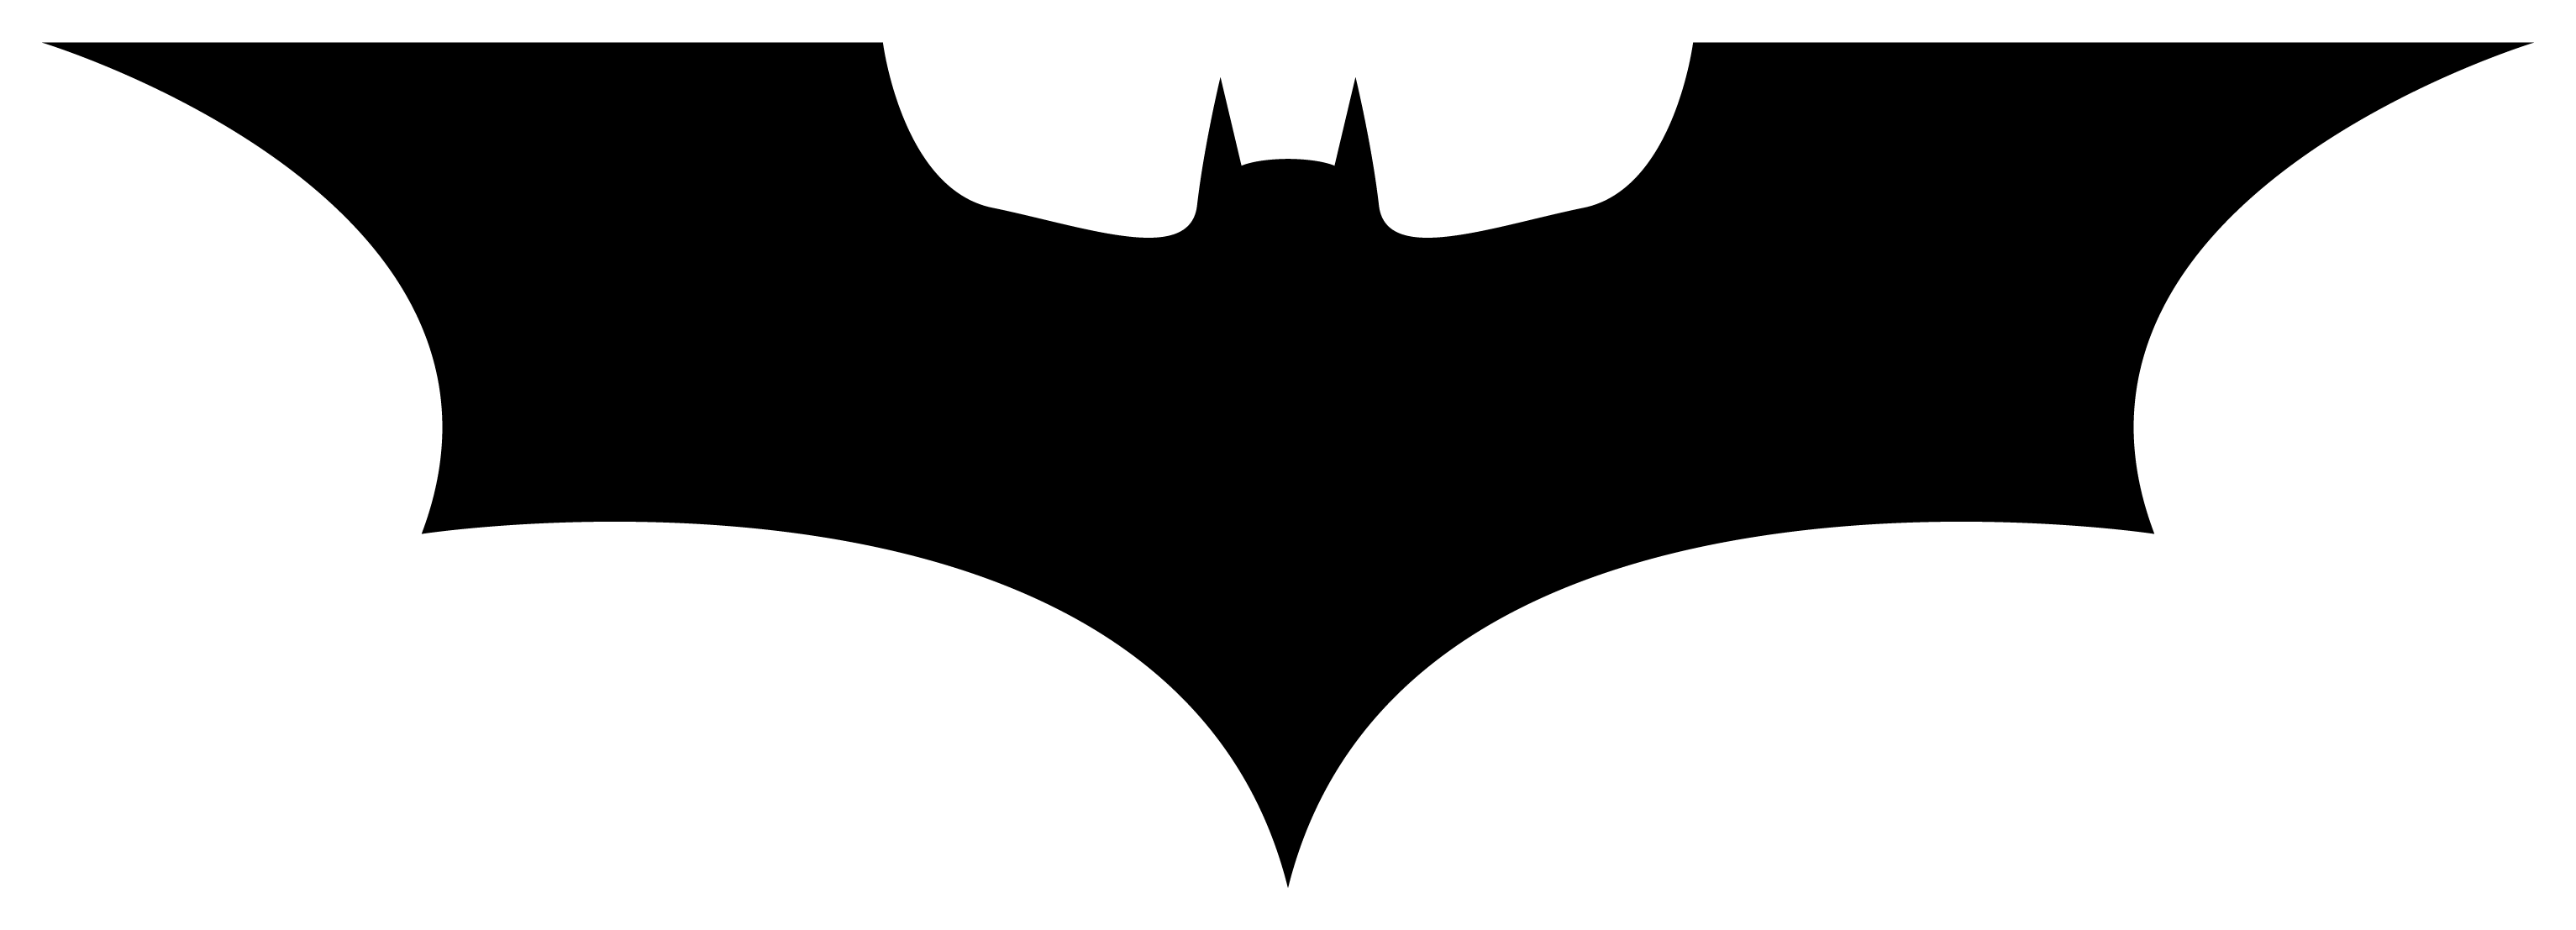 Super Bat Logo - S] 